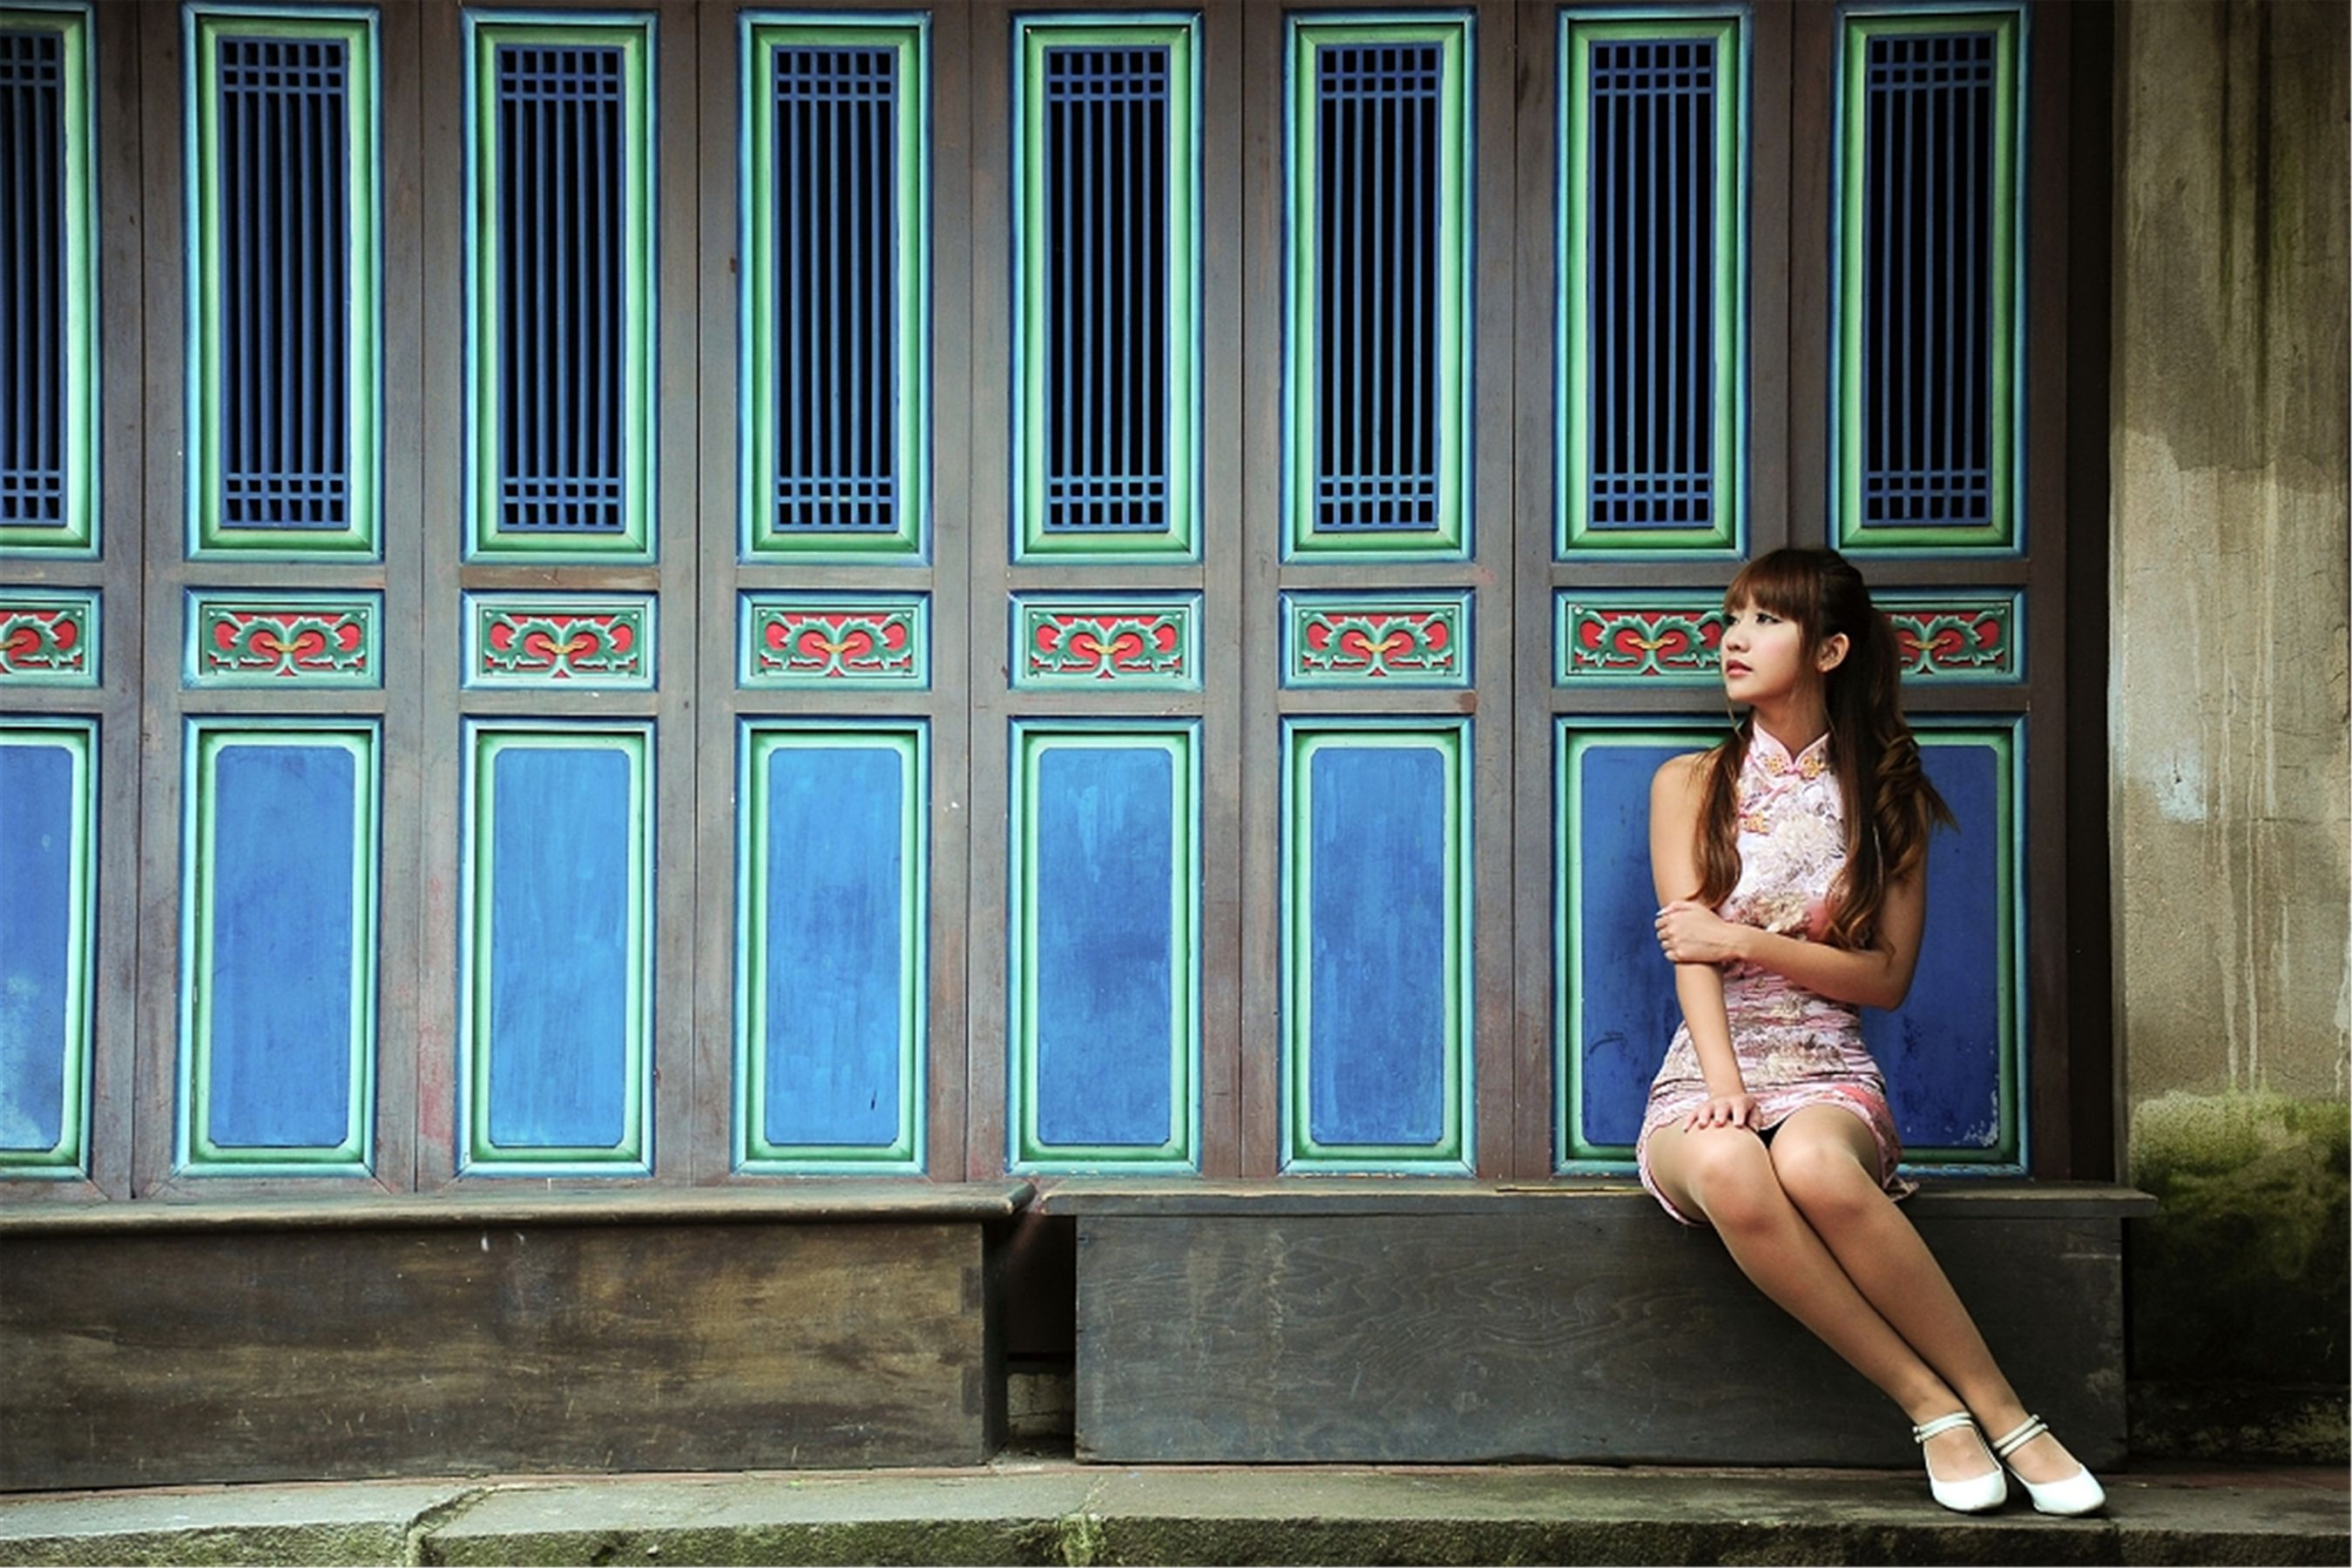 [旗袍美女] 台湾美女棠棠 - 林家花園外拍旗袍写真图片